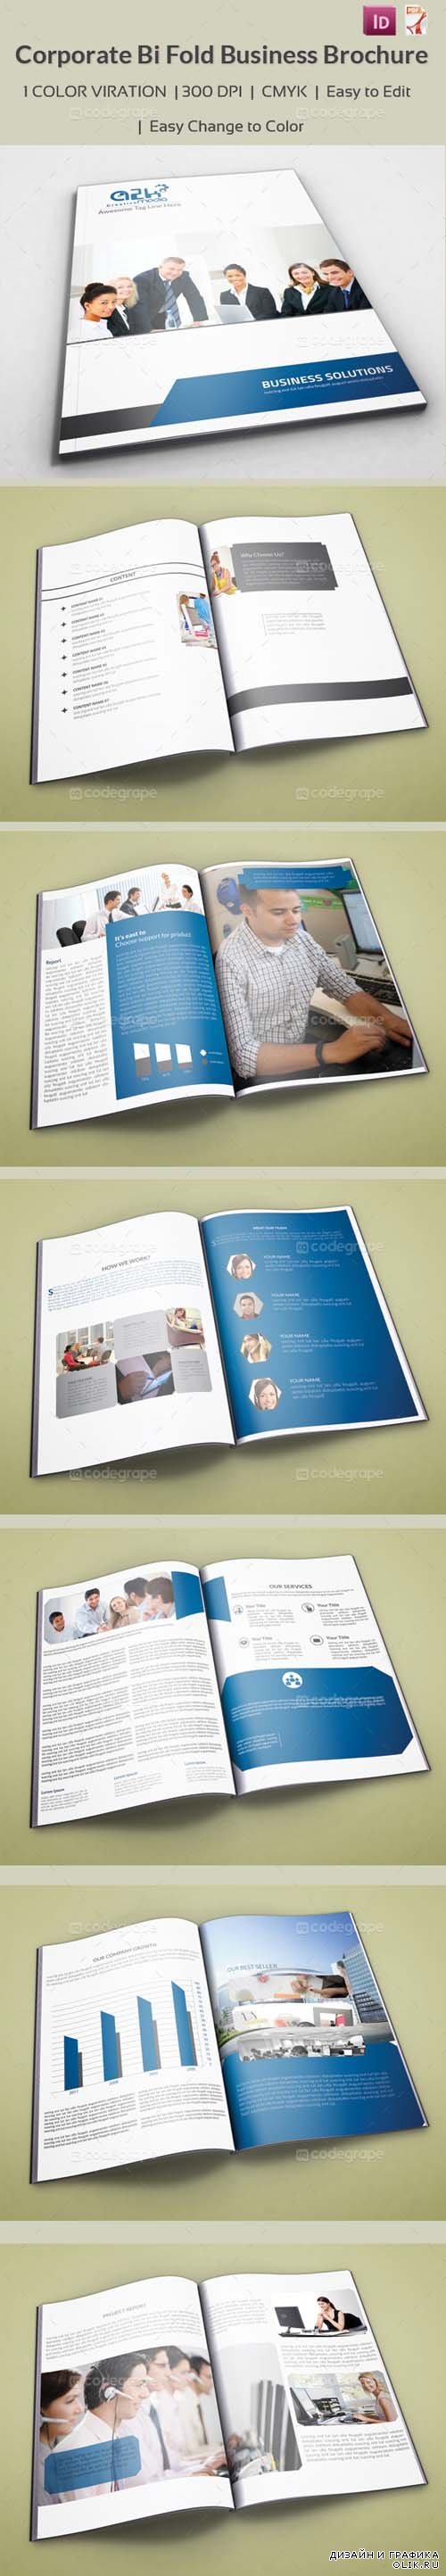 ИД Corporate Bi Fold Business Brochure